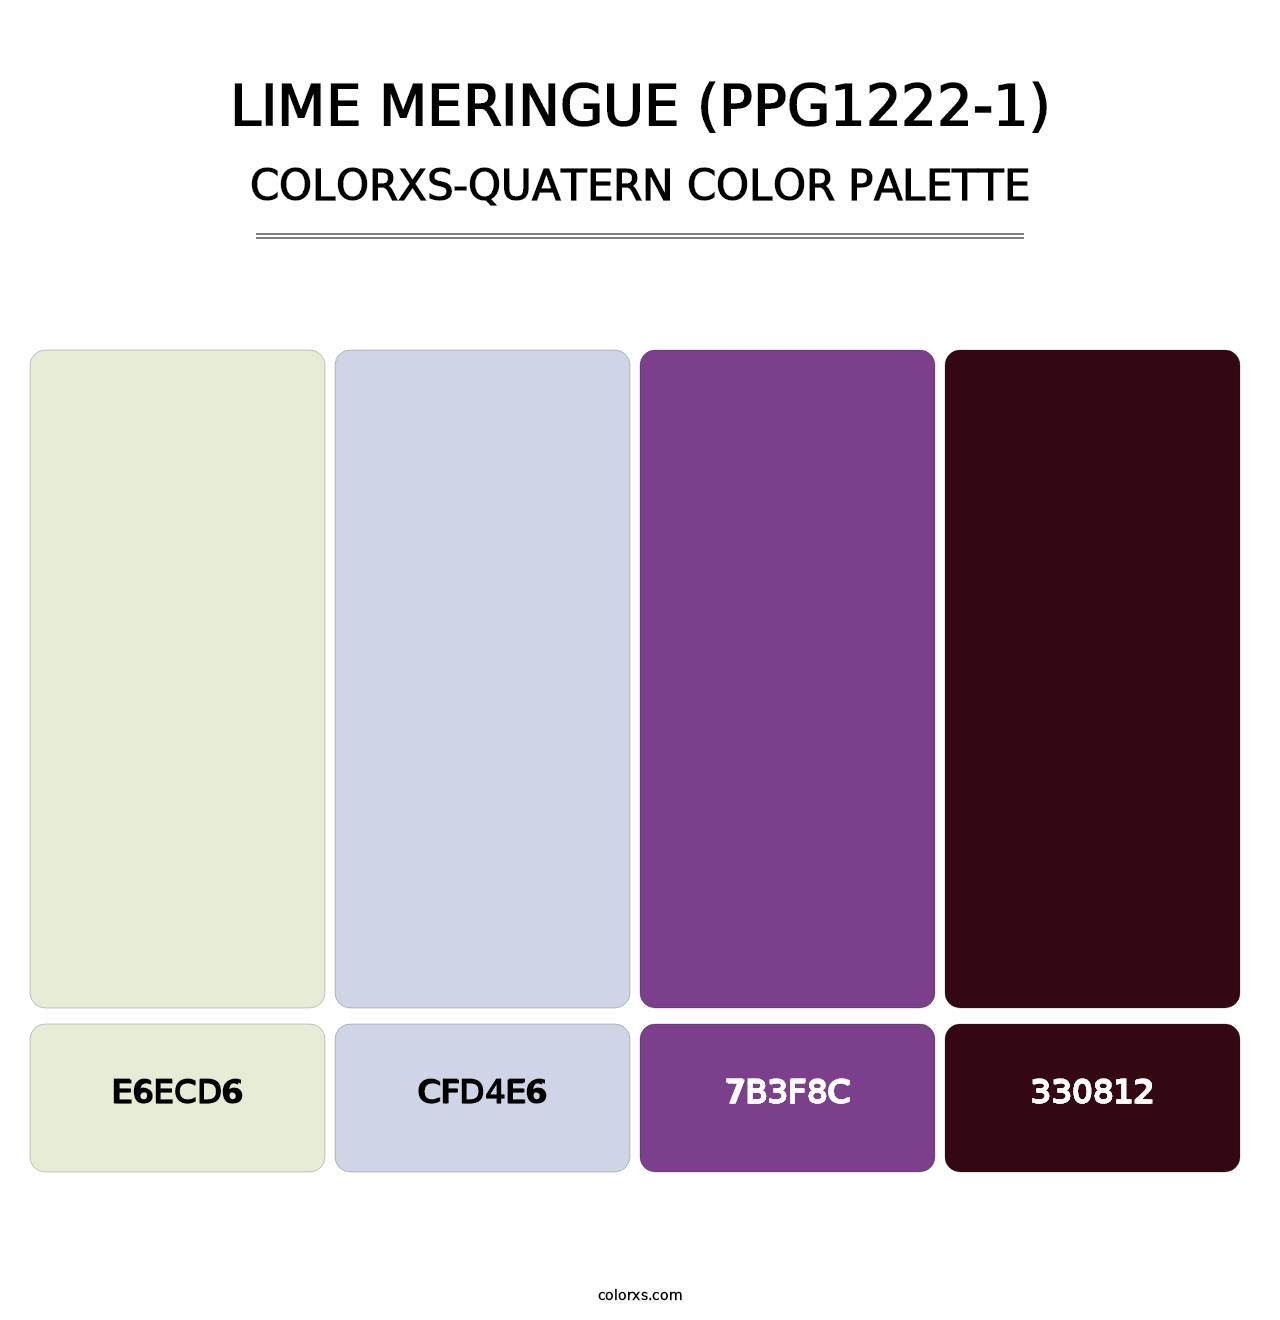 Lime Meringue (PPG1222-1) - Colorxs Quatern Palette